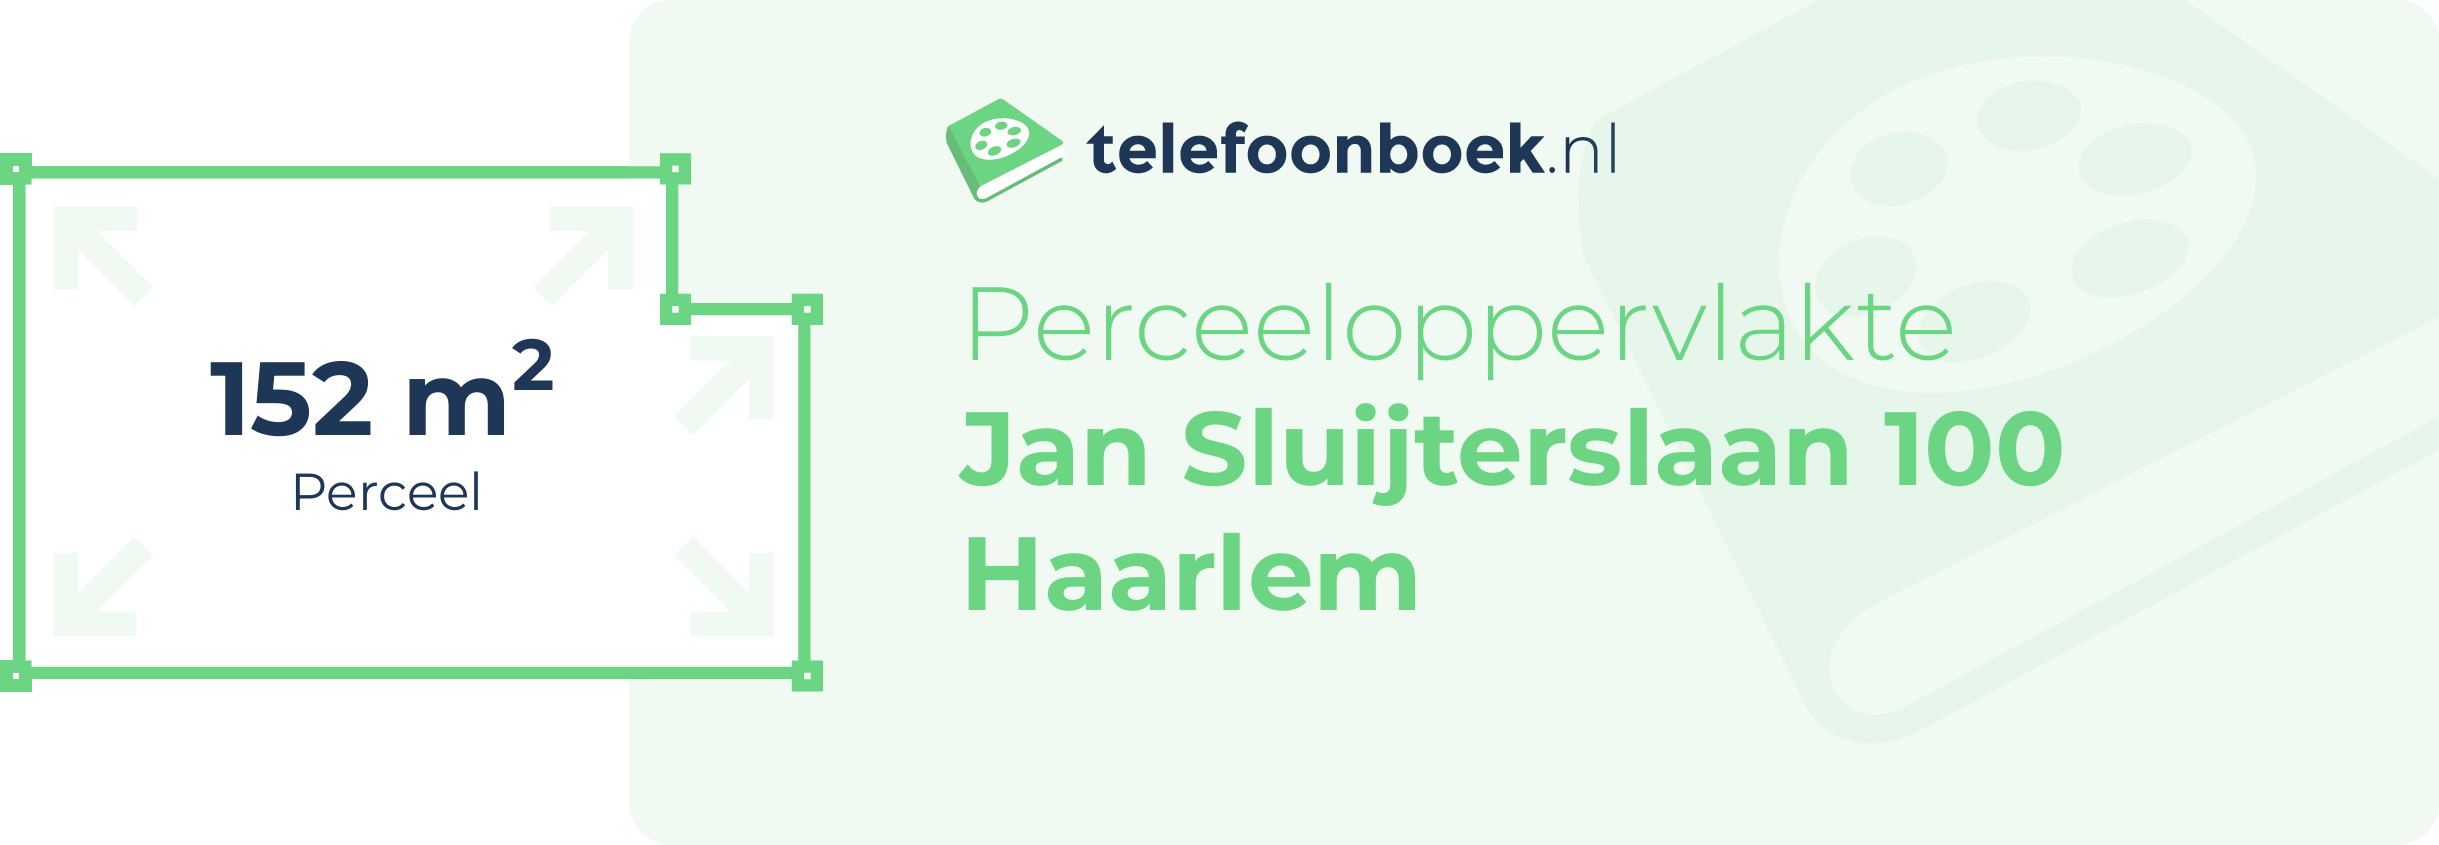 Perceeloppervlakte Jan Sluijterslaan 100 Haarlem